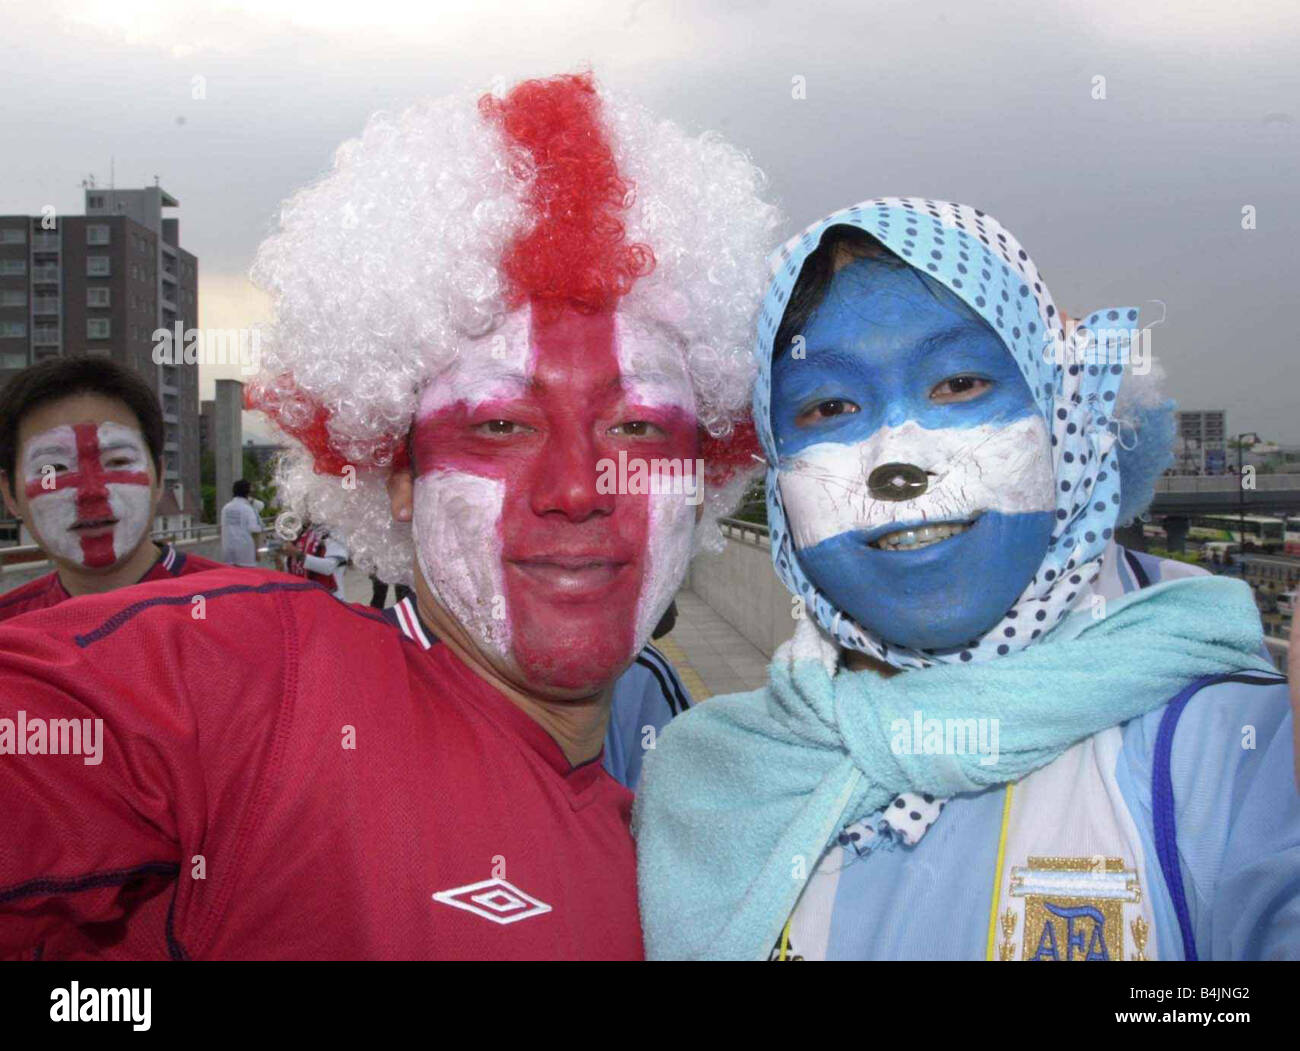 England Football Fans sostenitori Giugno 2002 Foto di celebrare dopo la vittoria contro l'Argentina Inghilterra giapponese e argentino ventole a Sapporo per l'inghilterra v argentina gioco. Foto Stock